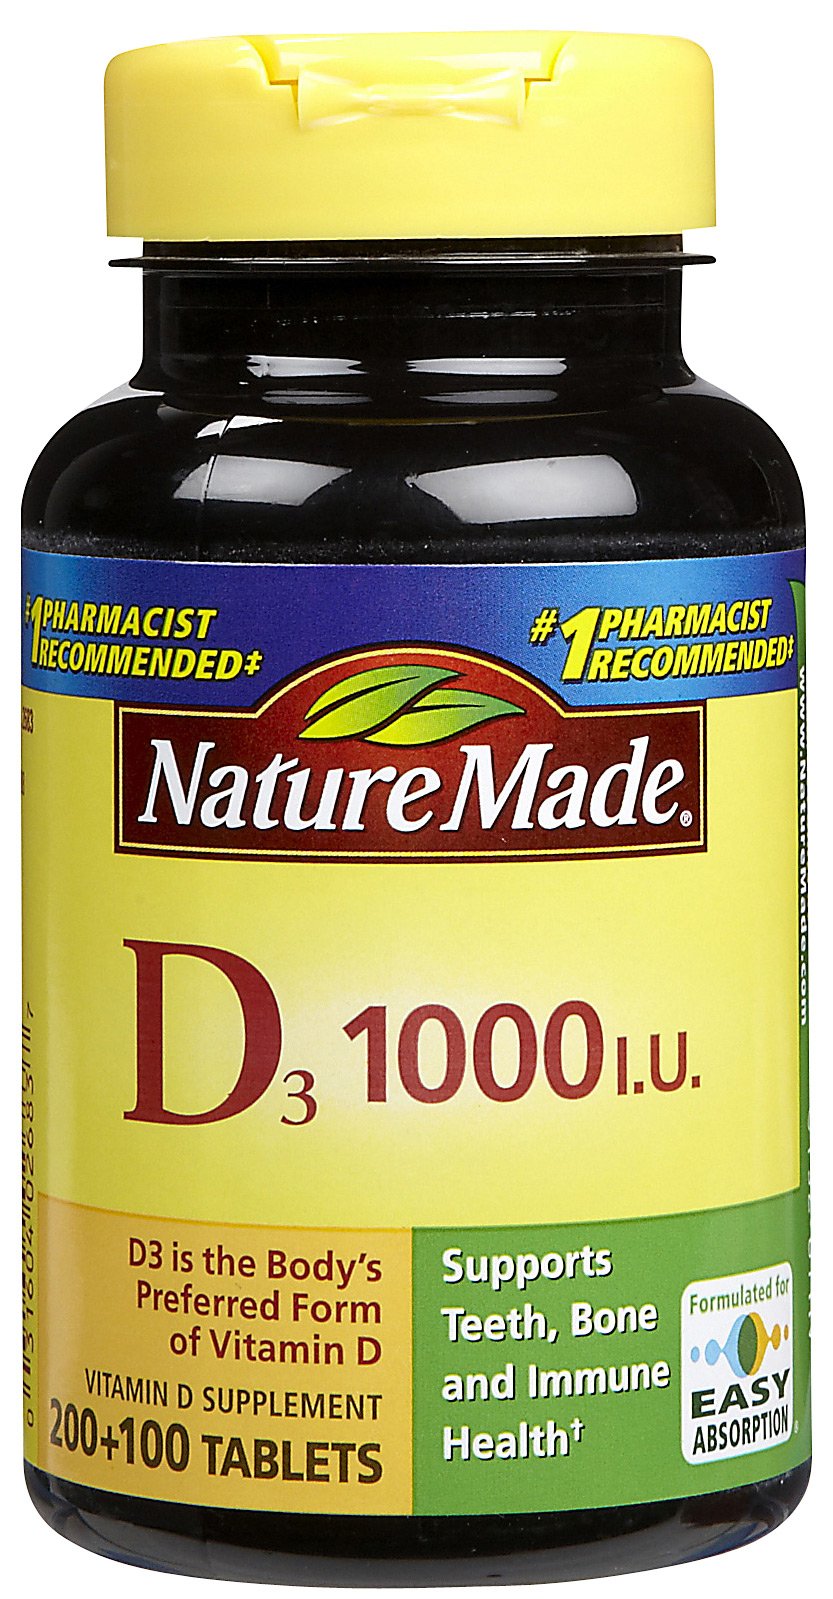 Nature Made Vitamin D Only $1.49 at Walgreens